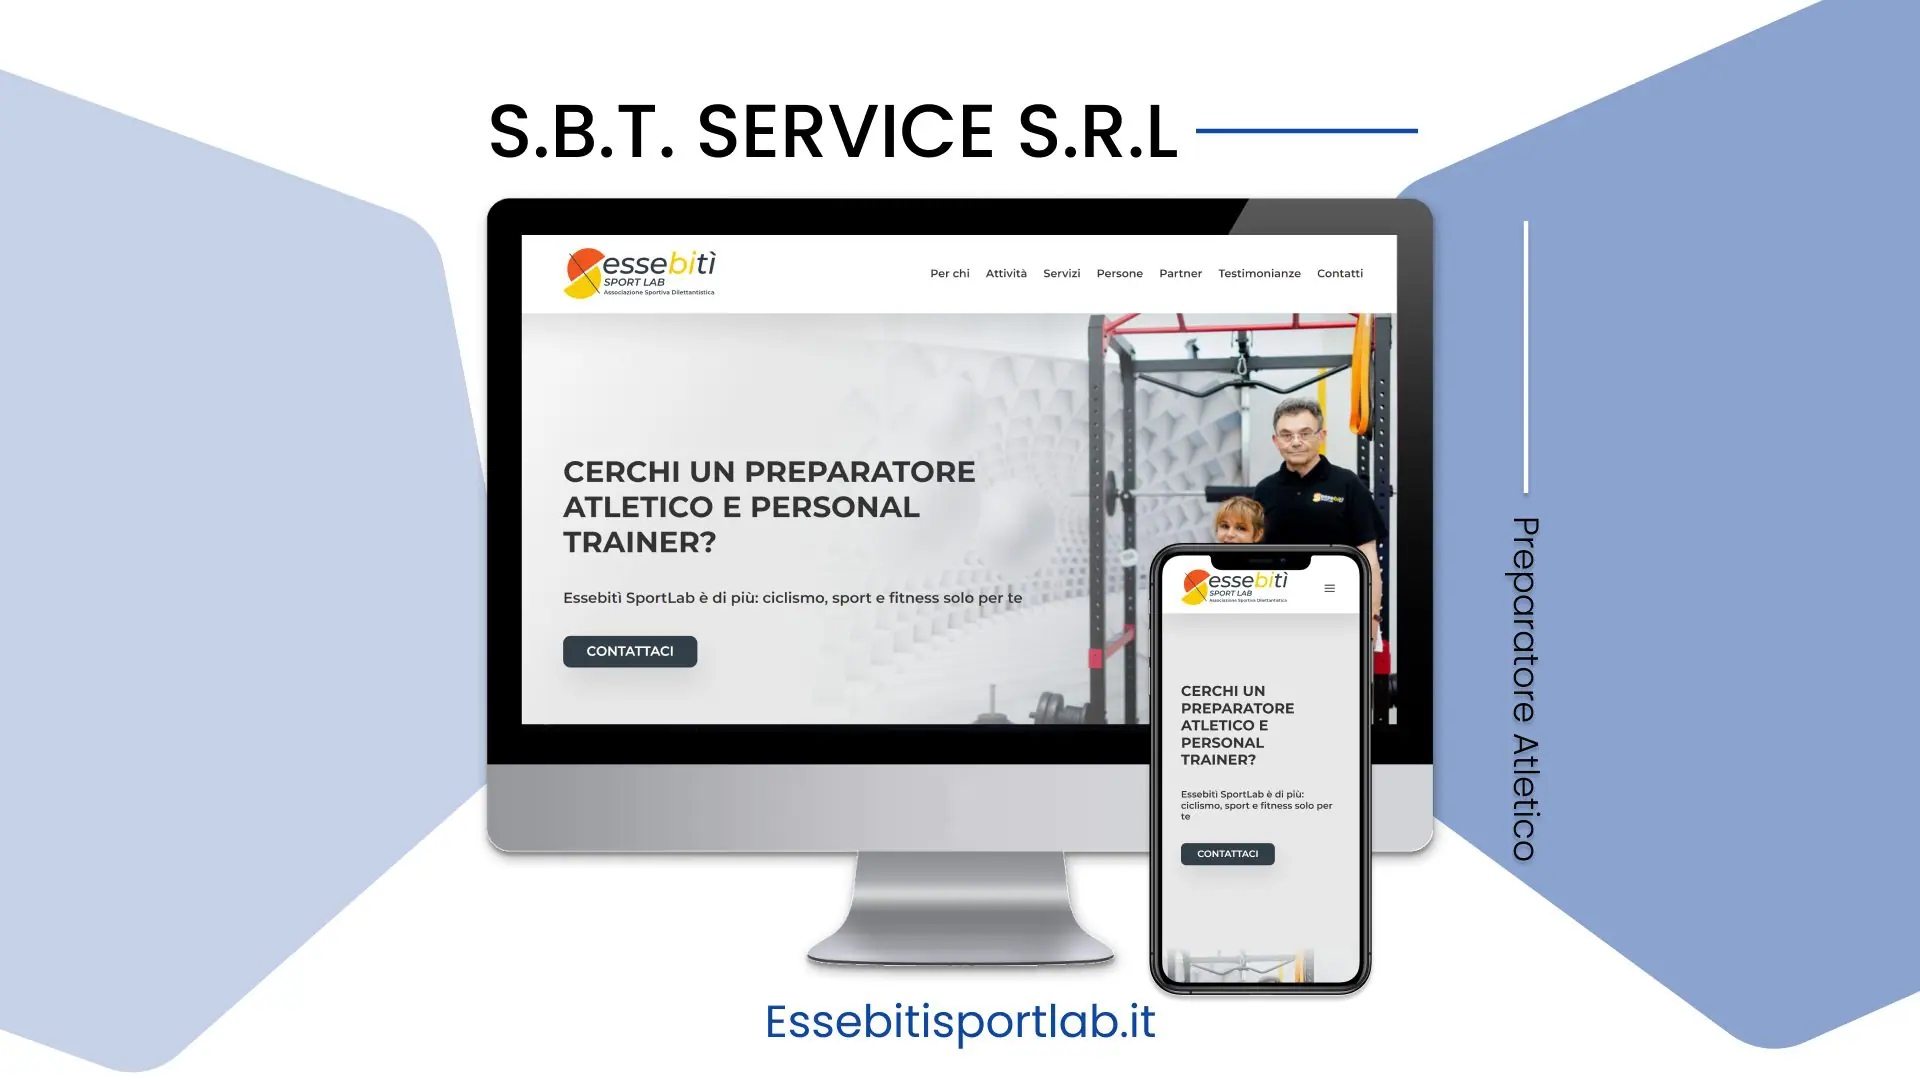 S.B.T. SERVICE S.R.L